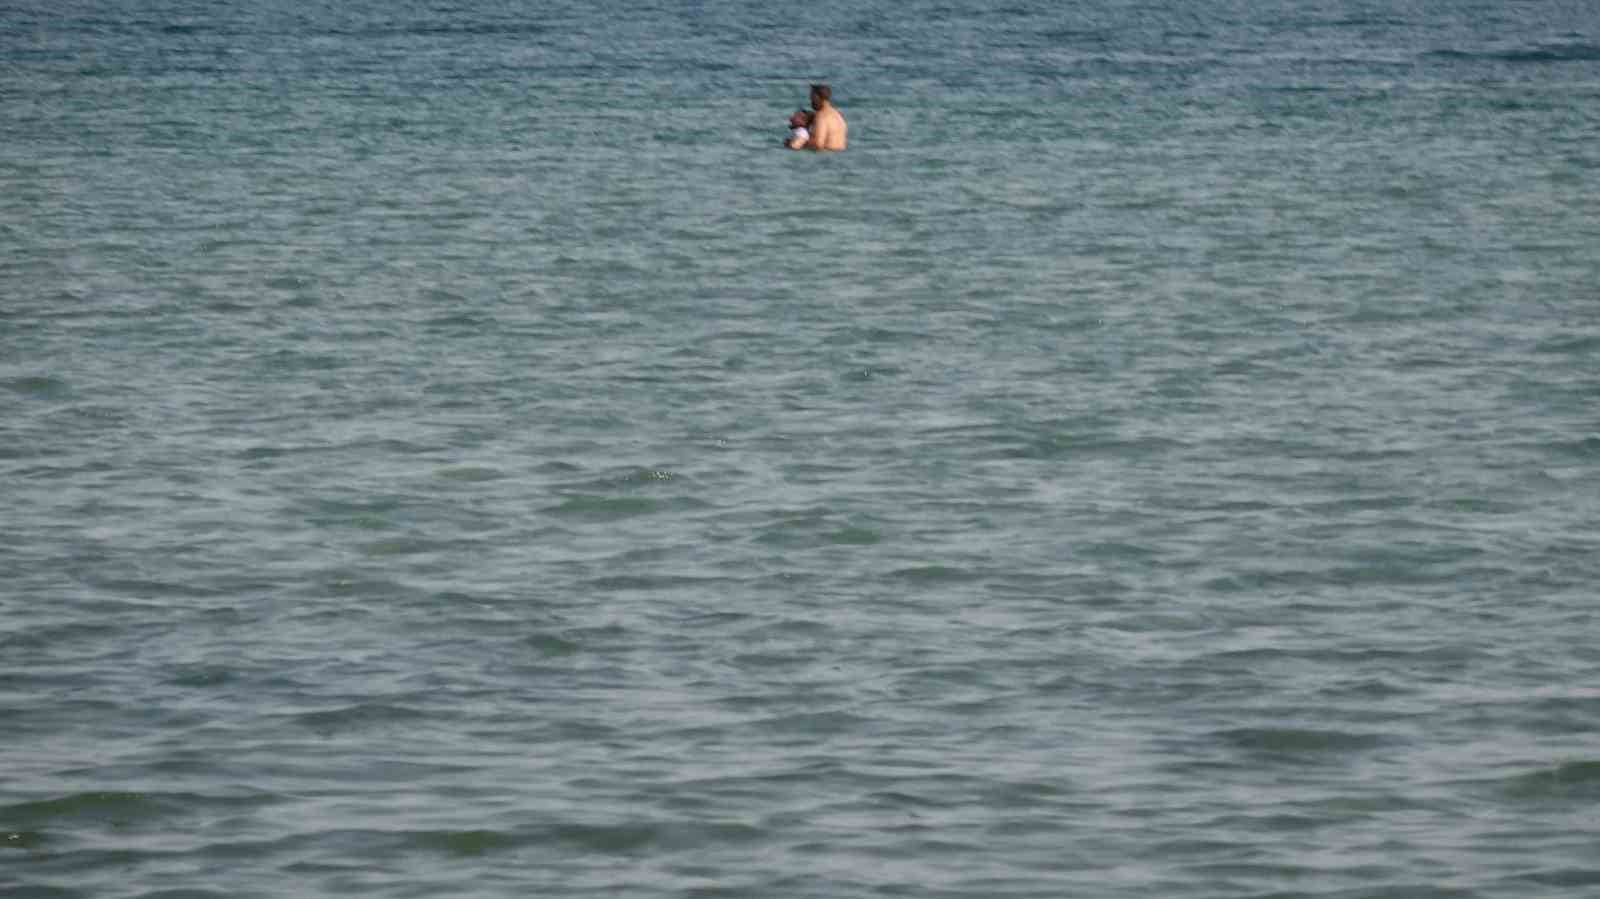 Van Gölü’ne giren 1 genç ile onu kurtarmaya çalışan kişi boğuldu